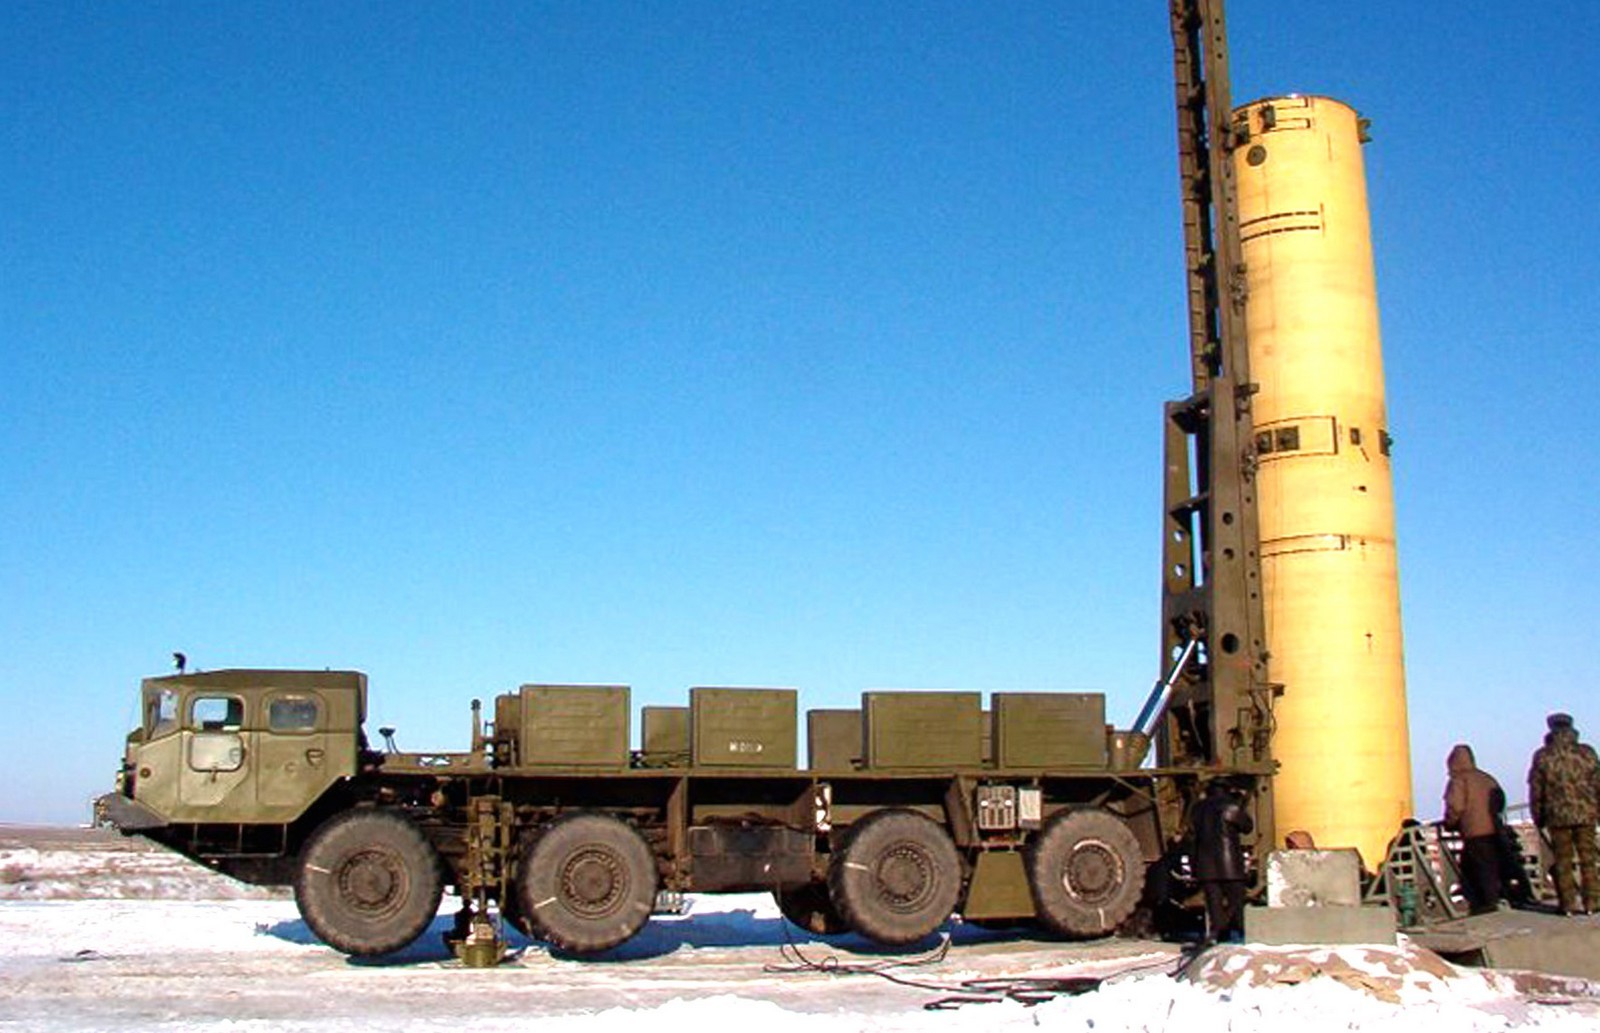 Транспортно-установочный агрегат 5Т92 с противоракетой 53Т6 комплекса ПРО «Амур» (фото Р. Белозерского)